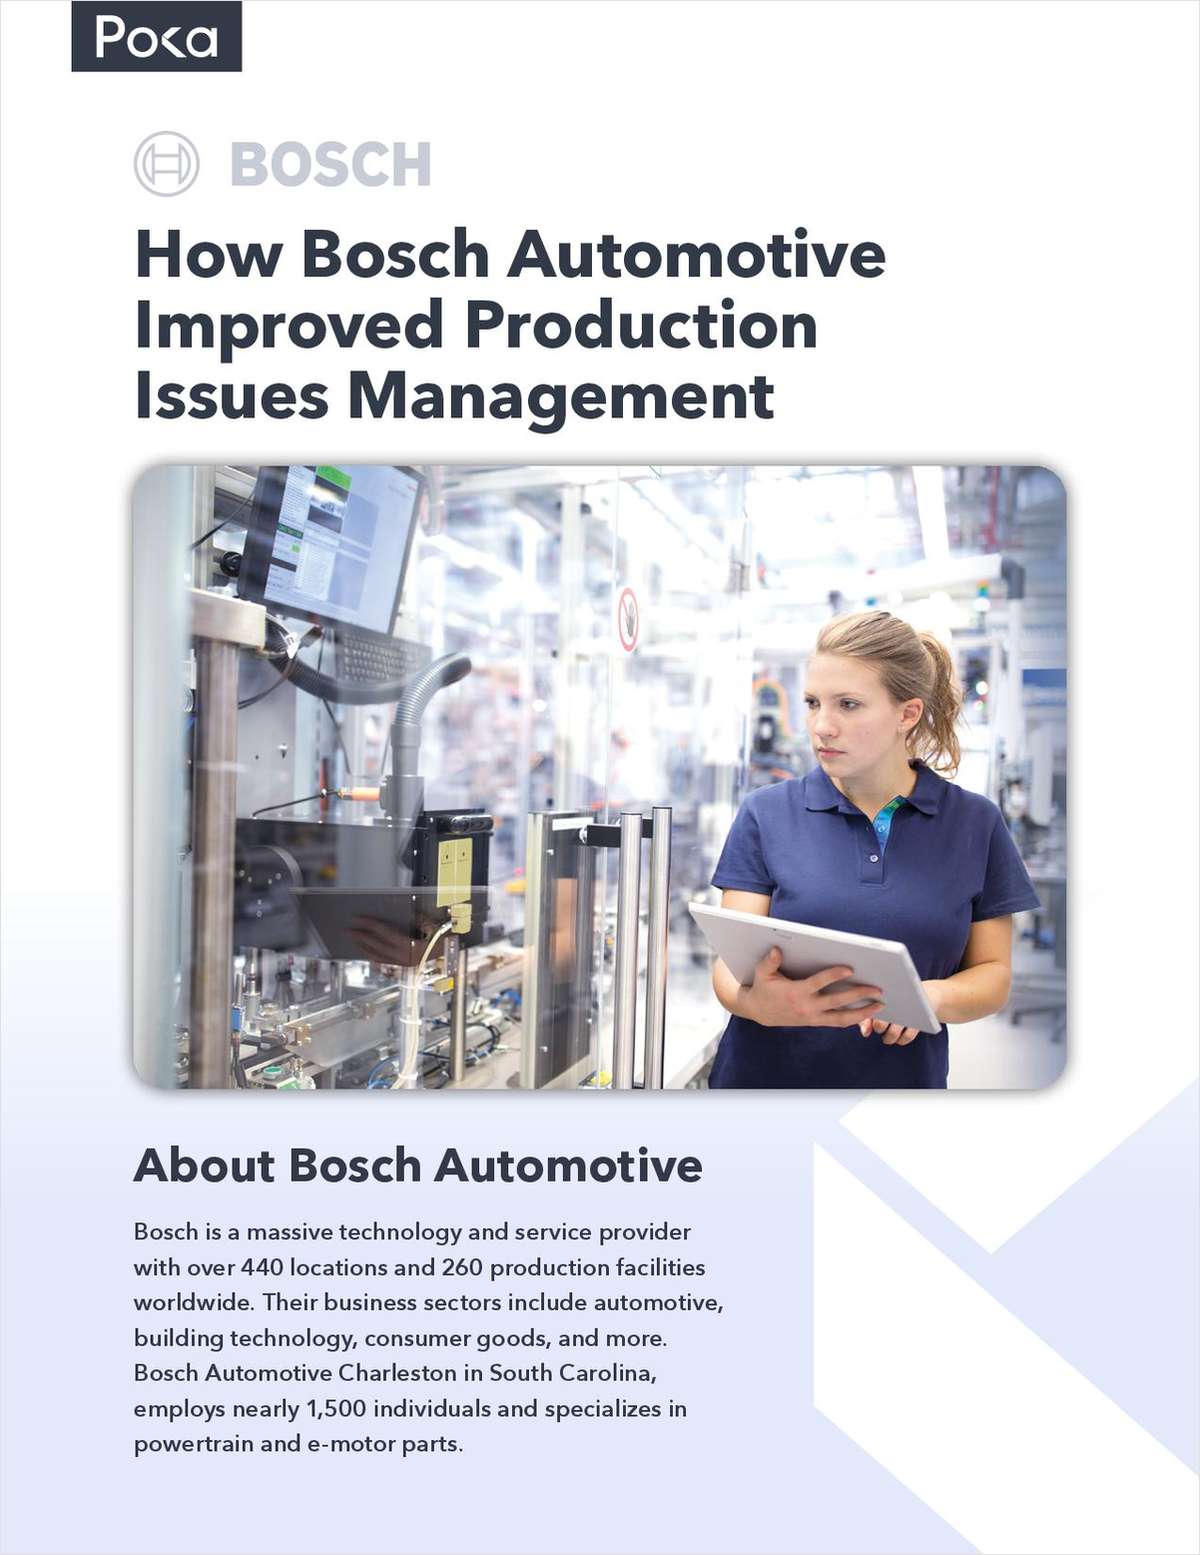 A Bosch Automotive Story